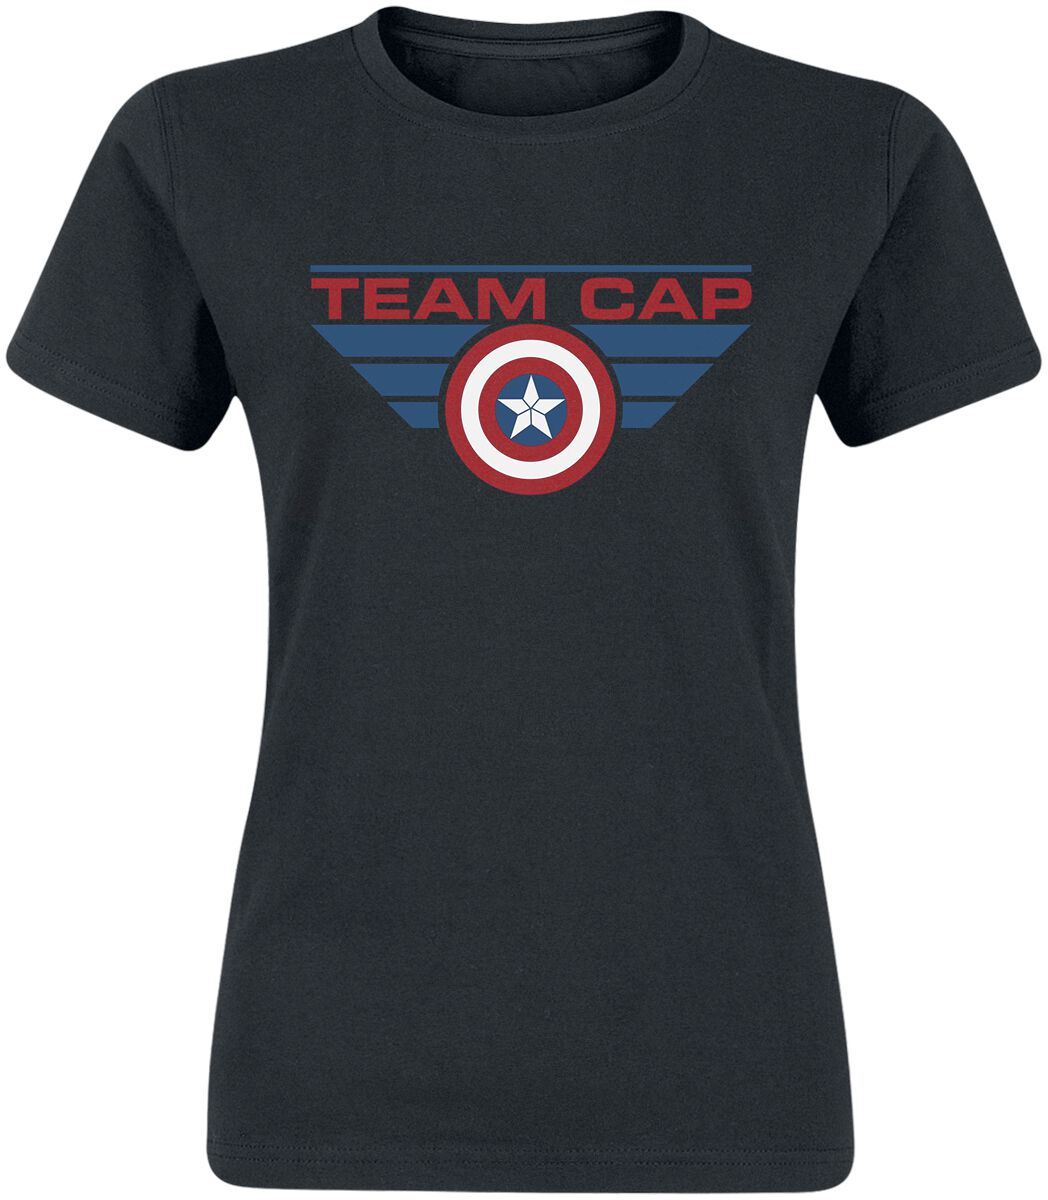 Captain America Team Cap T-Shirt black